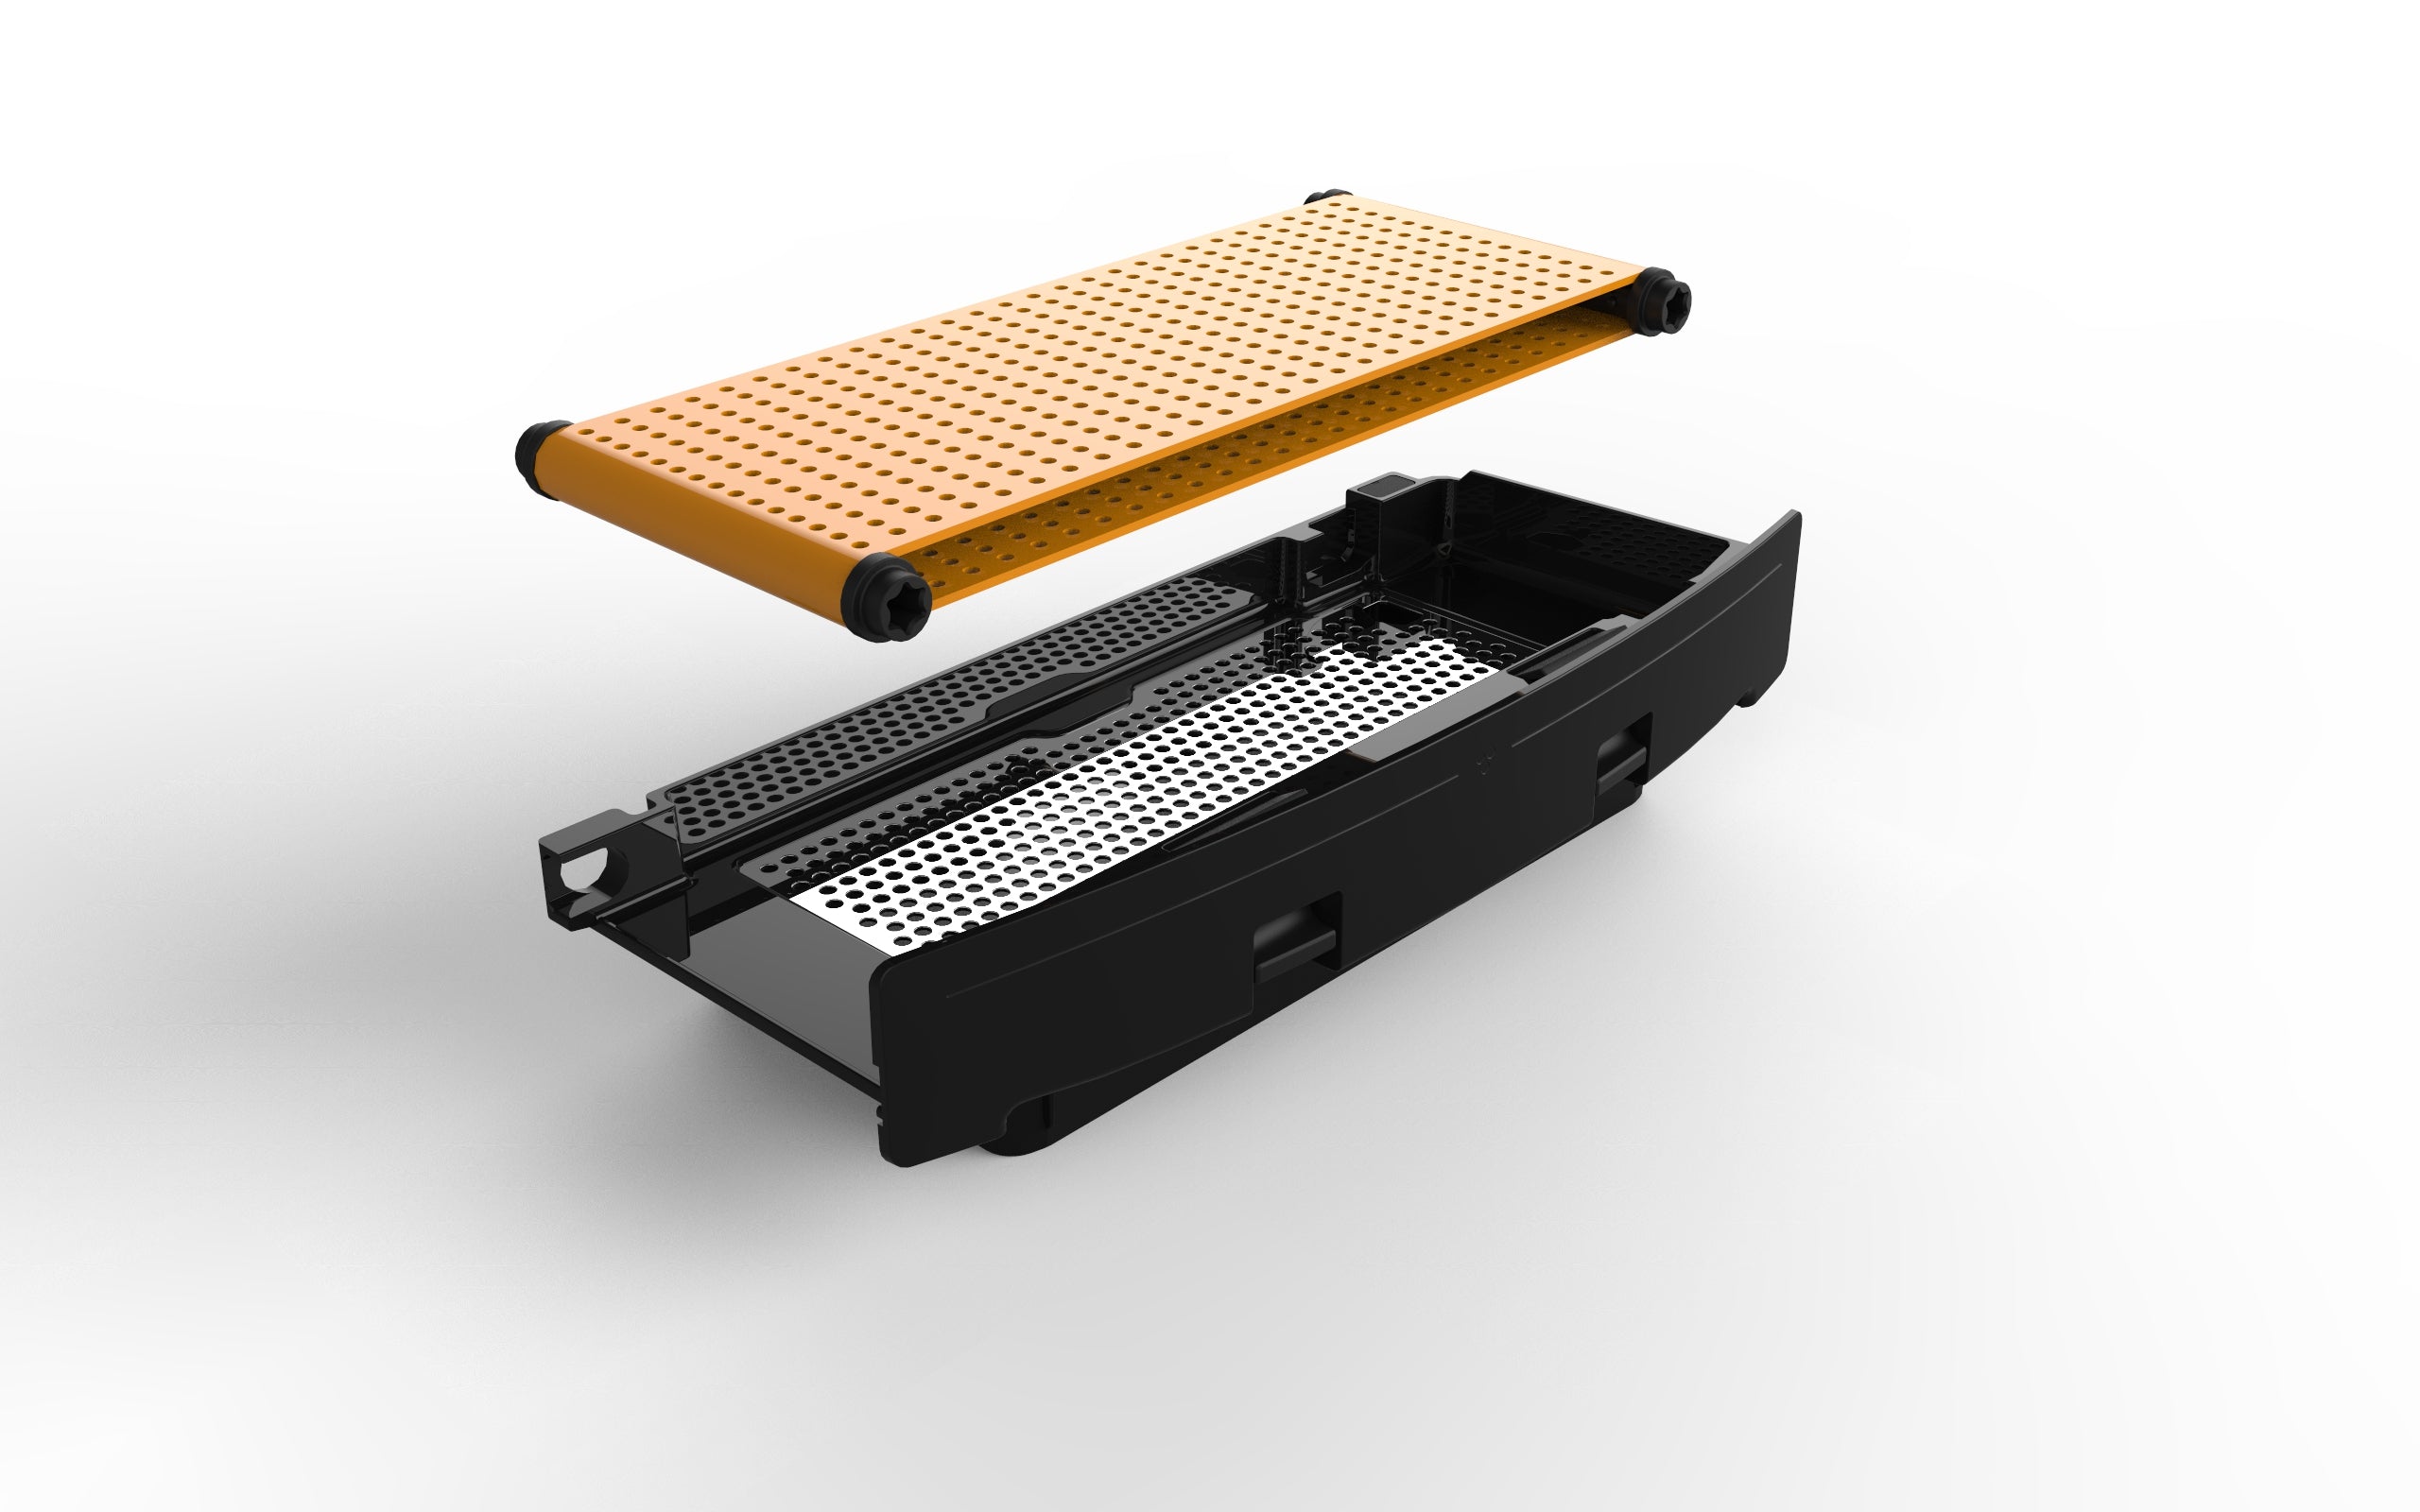 Zumex New Smart Versatile Pro All-in-One (BH) Juicer in Orange